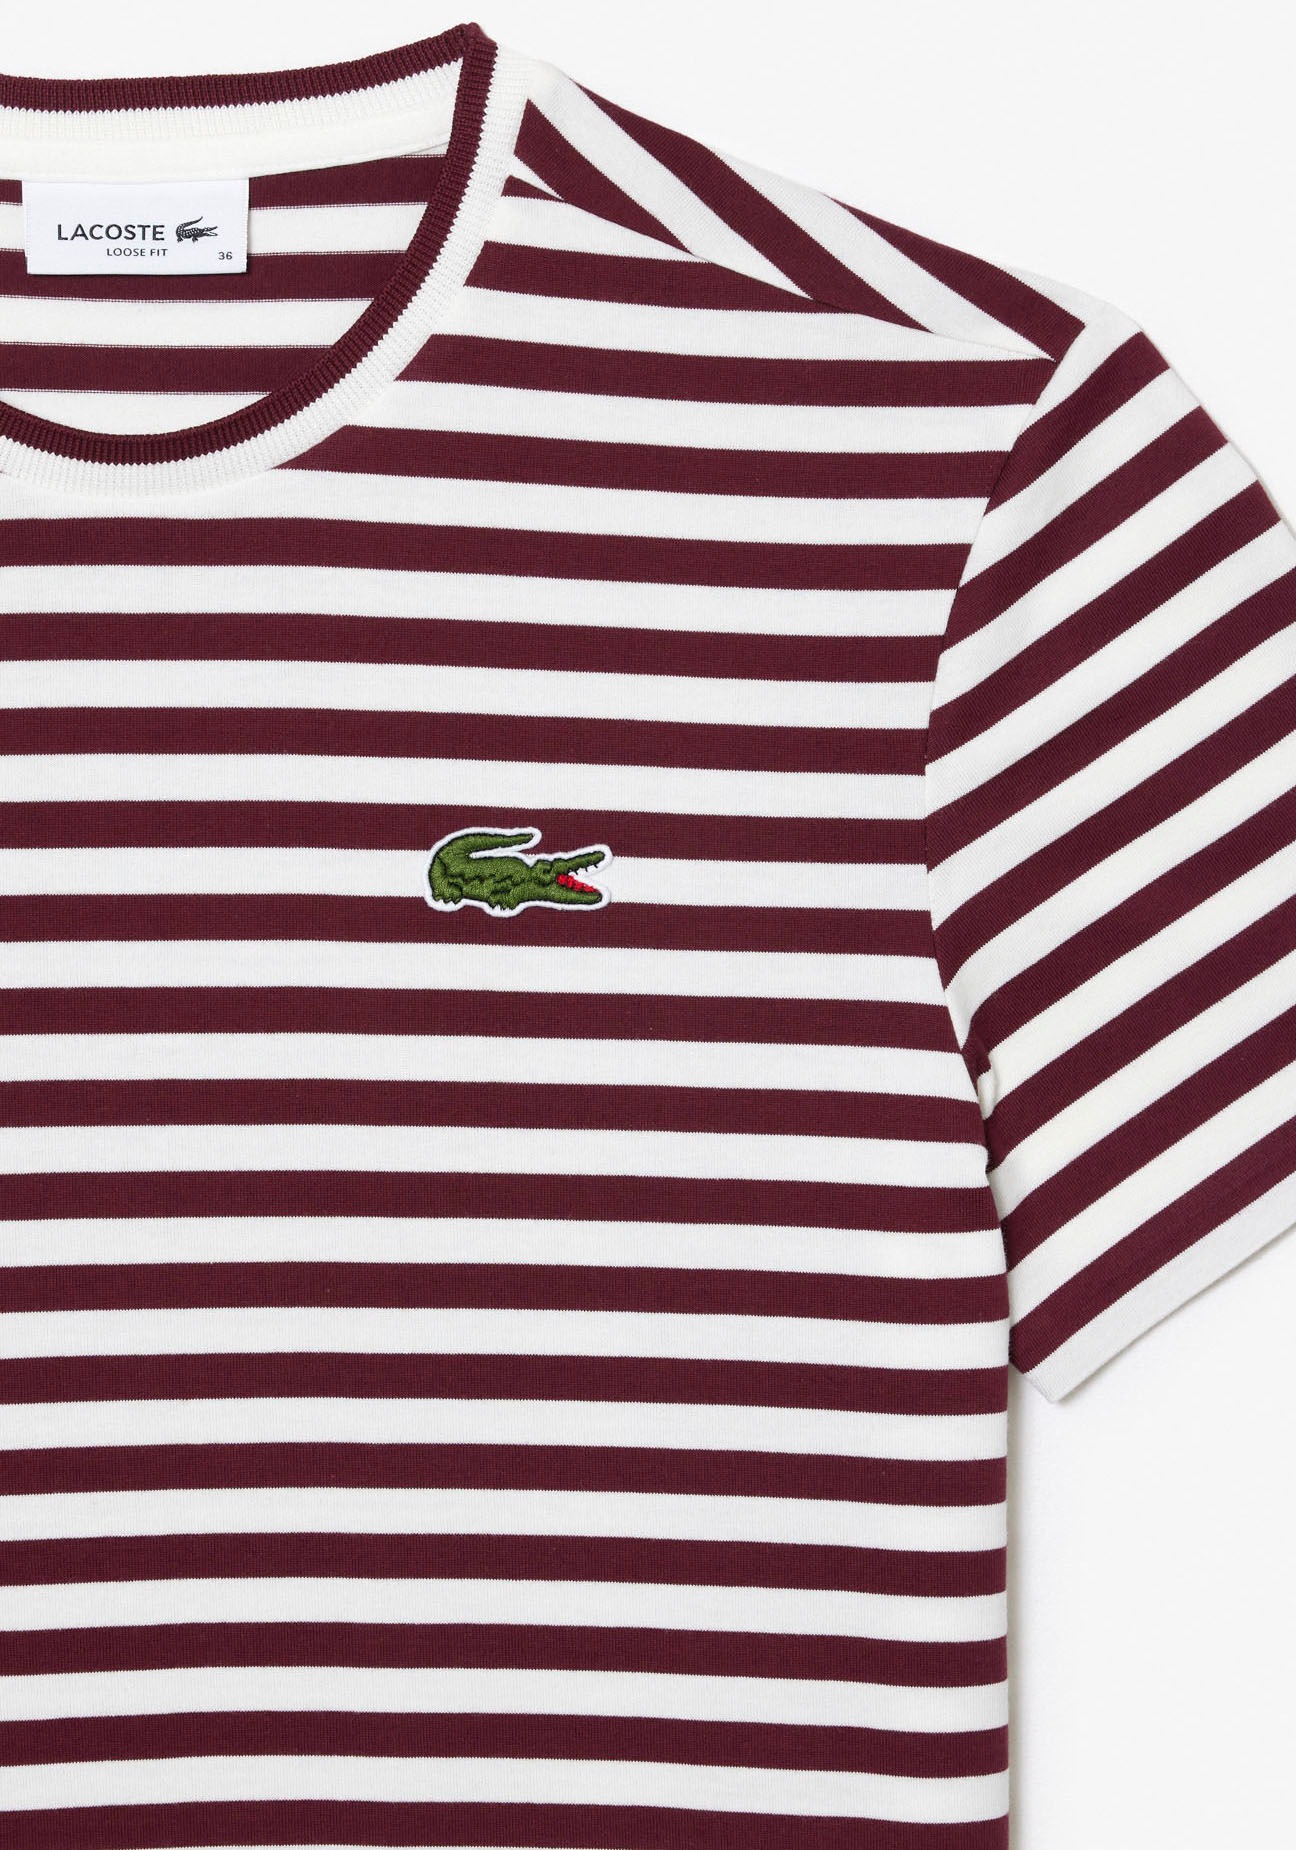 Stickerei bei Lacoste kaufen Lacoste-Krokodil OTTO klassischer T-Shirt, mit